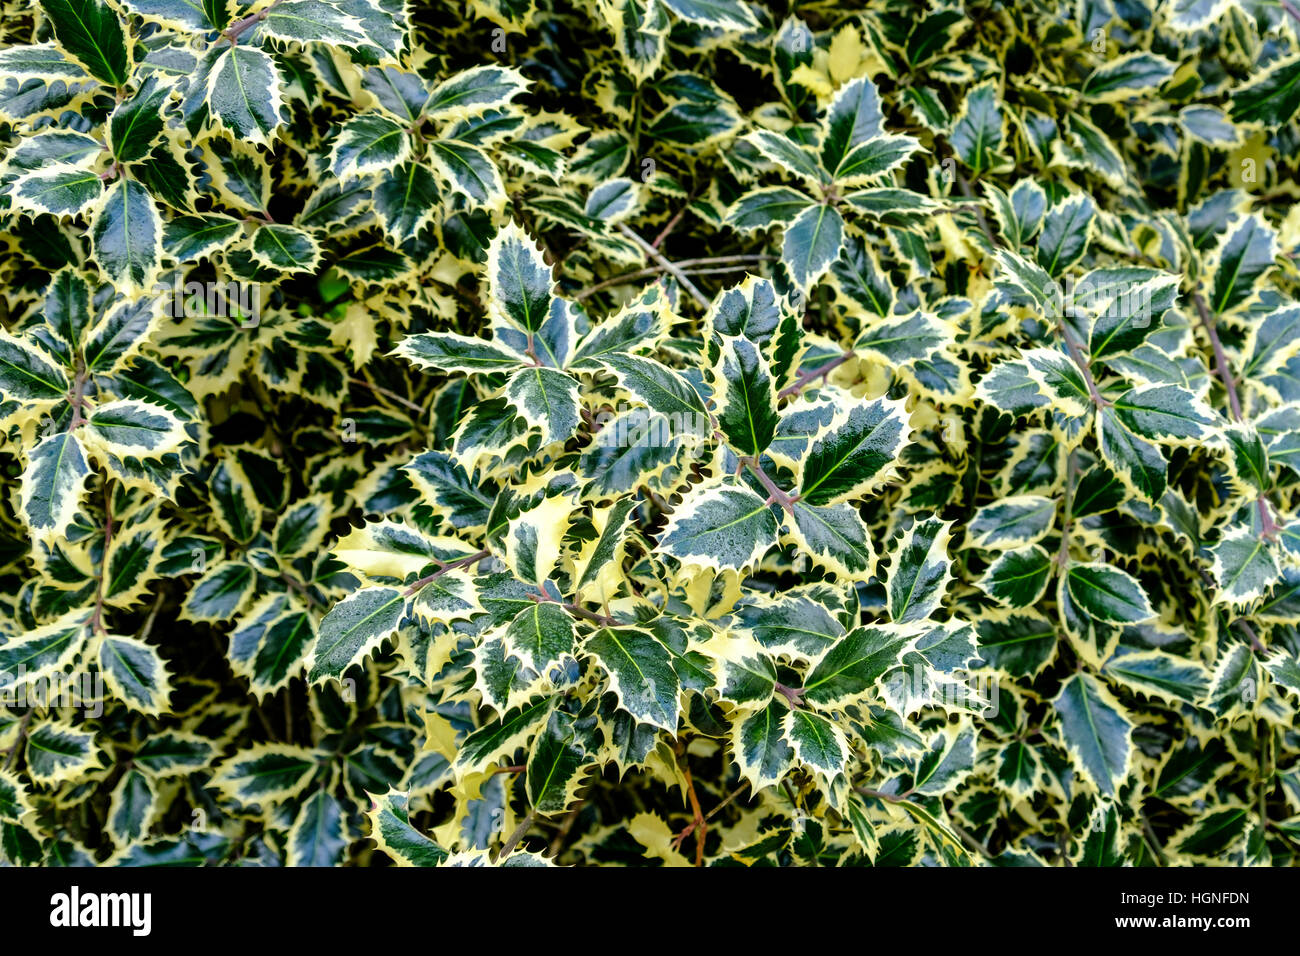 Belles feuilles luisantes du houx panaché, Ilex aquifolium, avec sa masse de feuillage vert clair et crème Banque D'Images